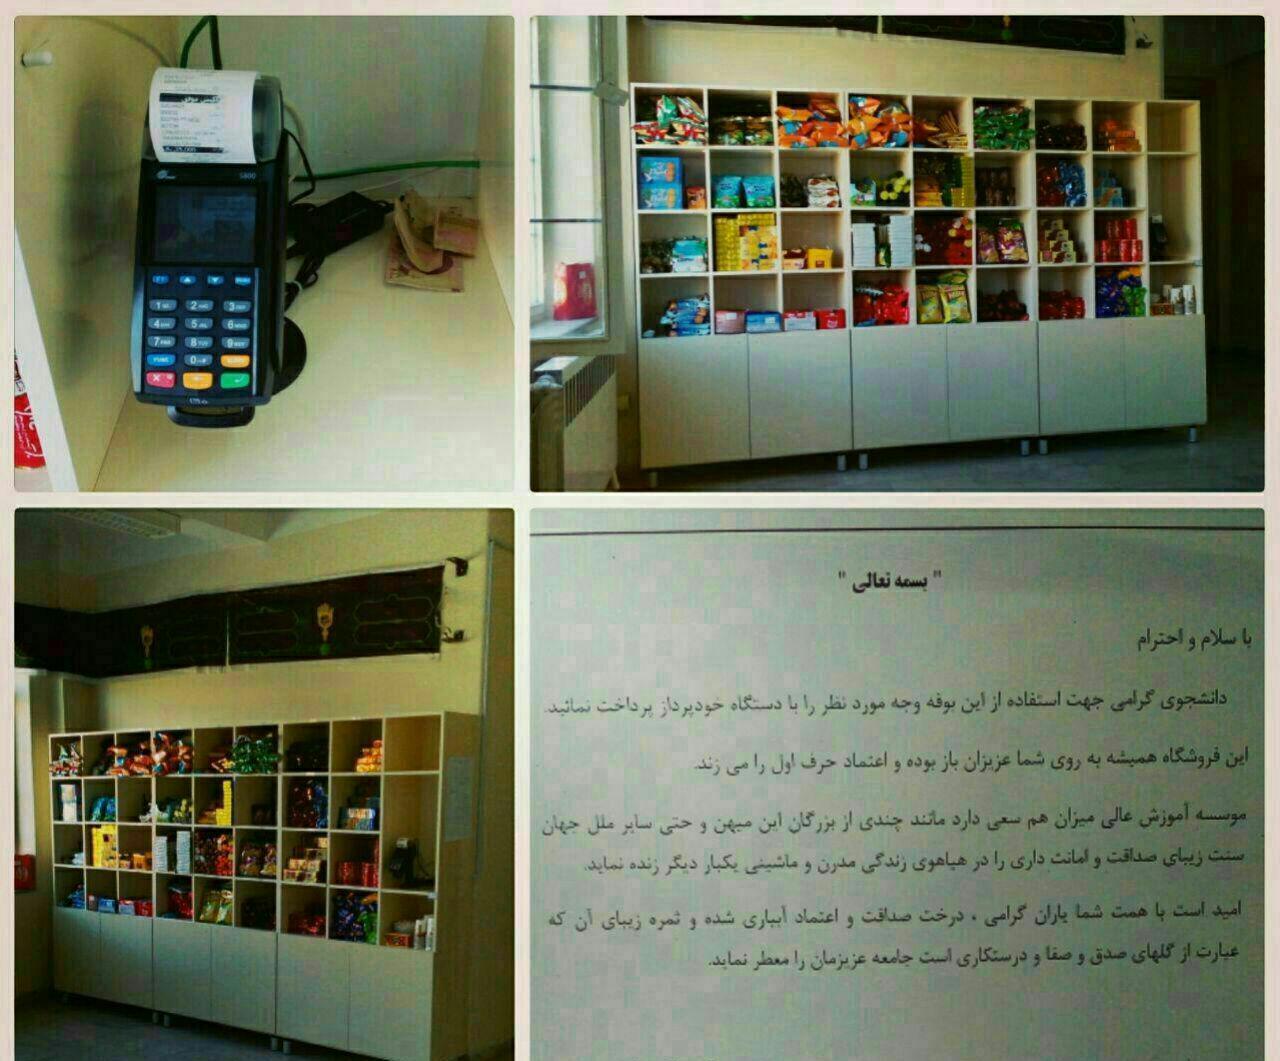 بوفه بدون فروشنده در یکی از مؤسسات آموزشیِ تبریز +عکس